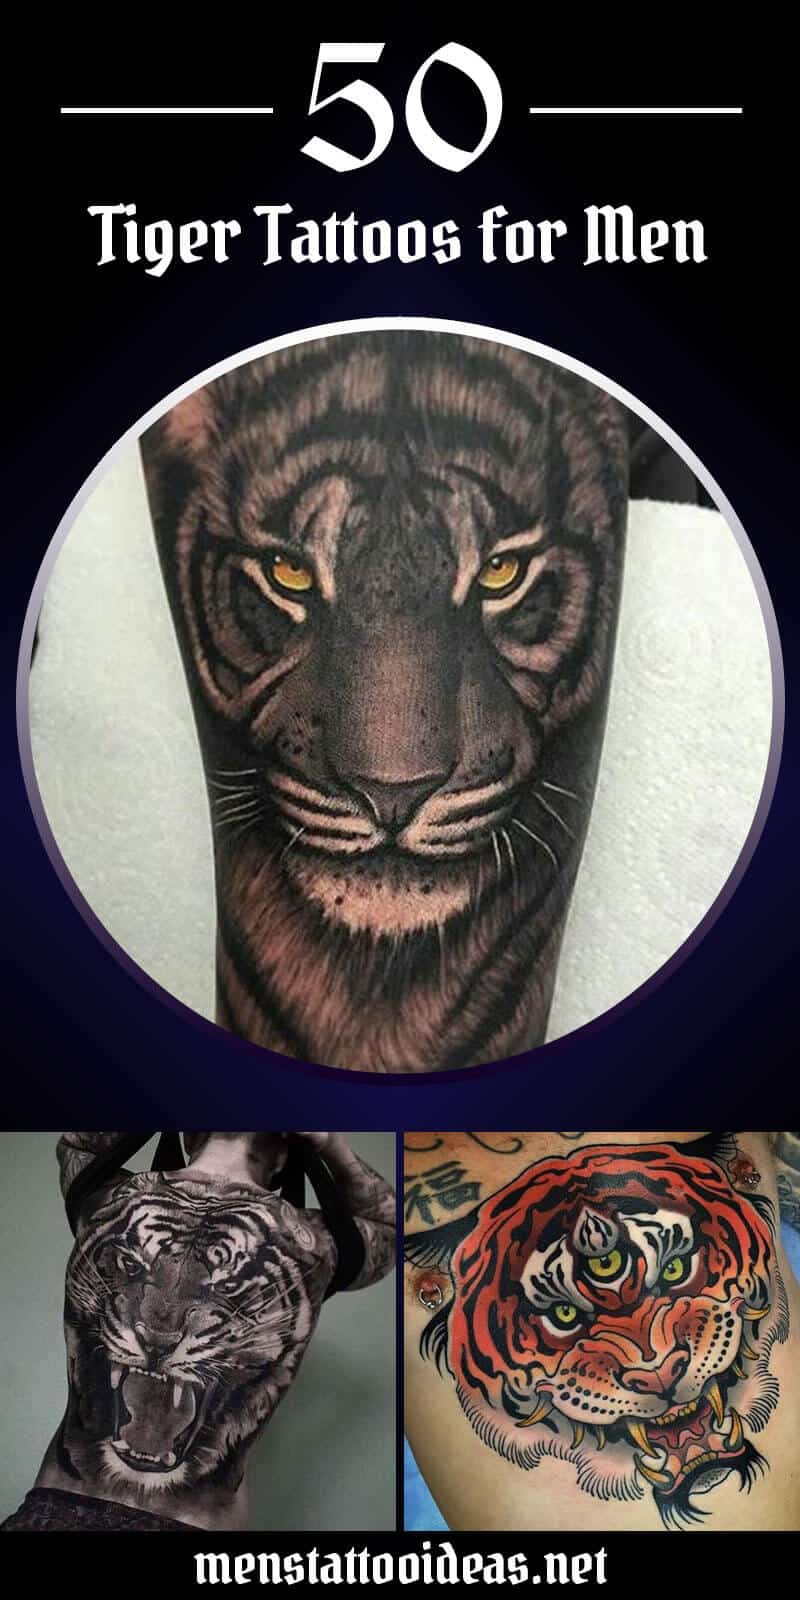 tiger-tattoos-for-men